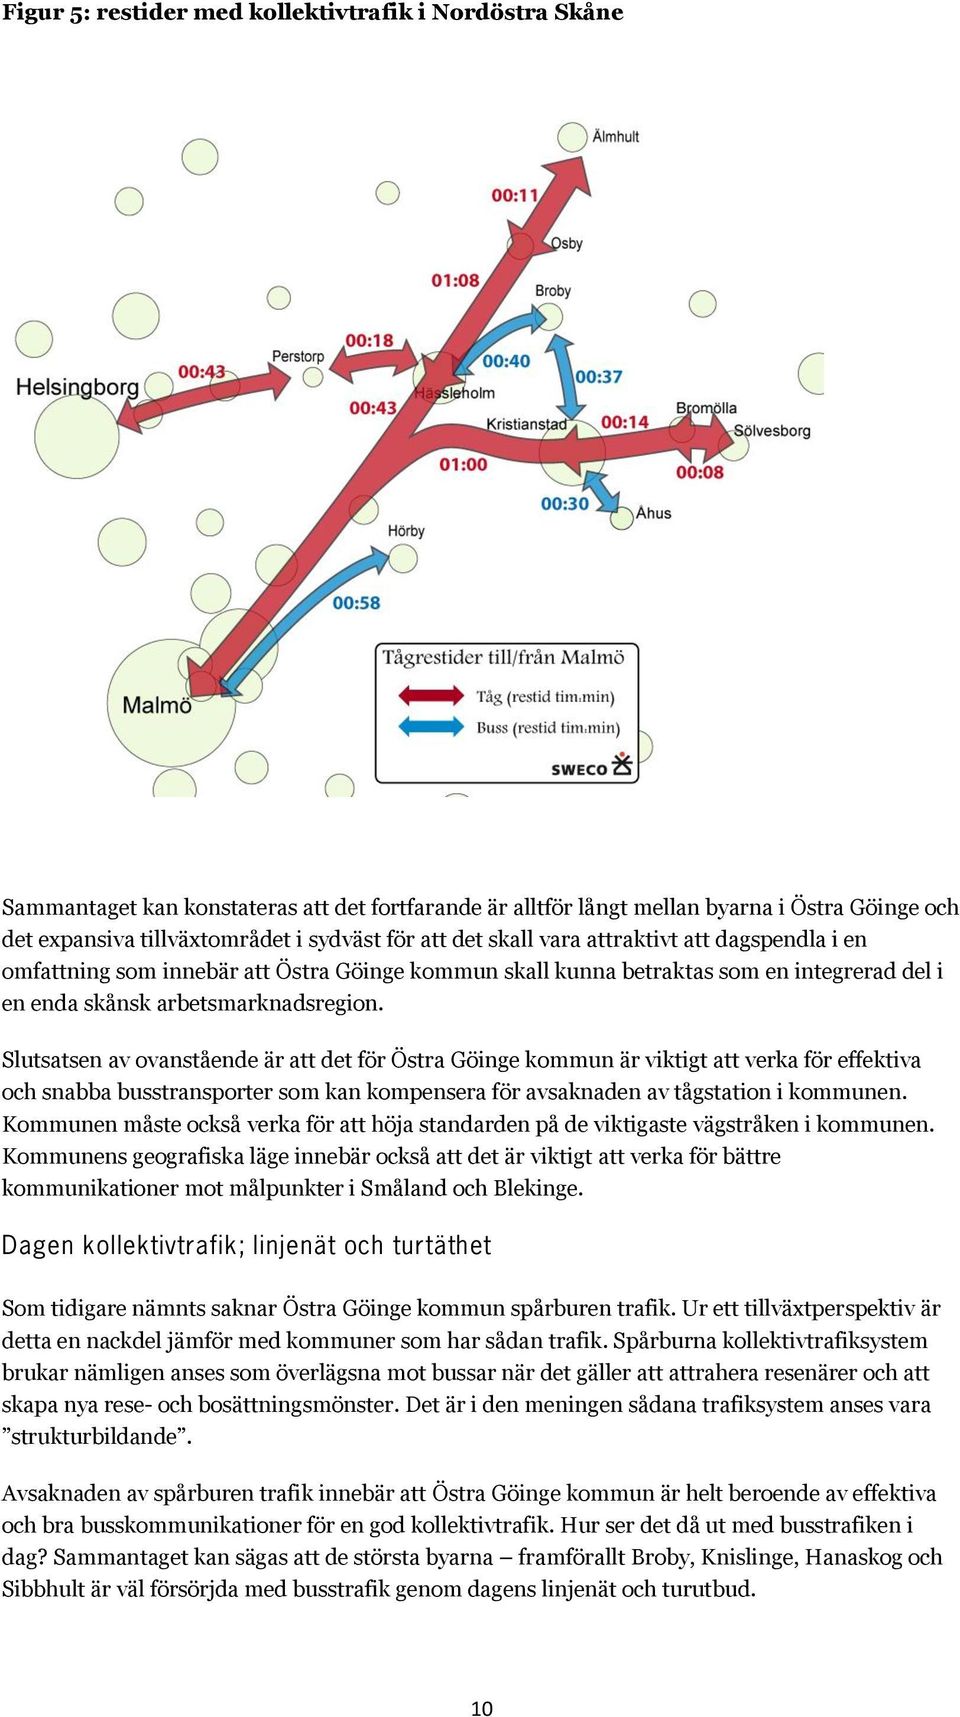 Slutsatsen av ovanstående är att det för Östra Göinge kommun är viktigt att verka för effektiva och snabba busstransporter som kan kompensera för avsaknaden av tågstation i kommunen.